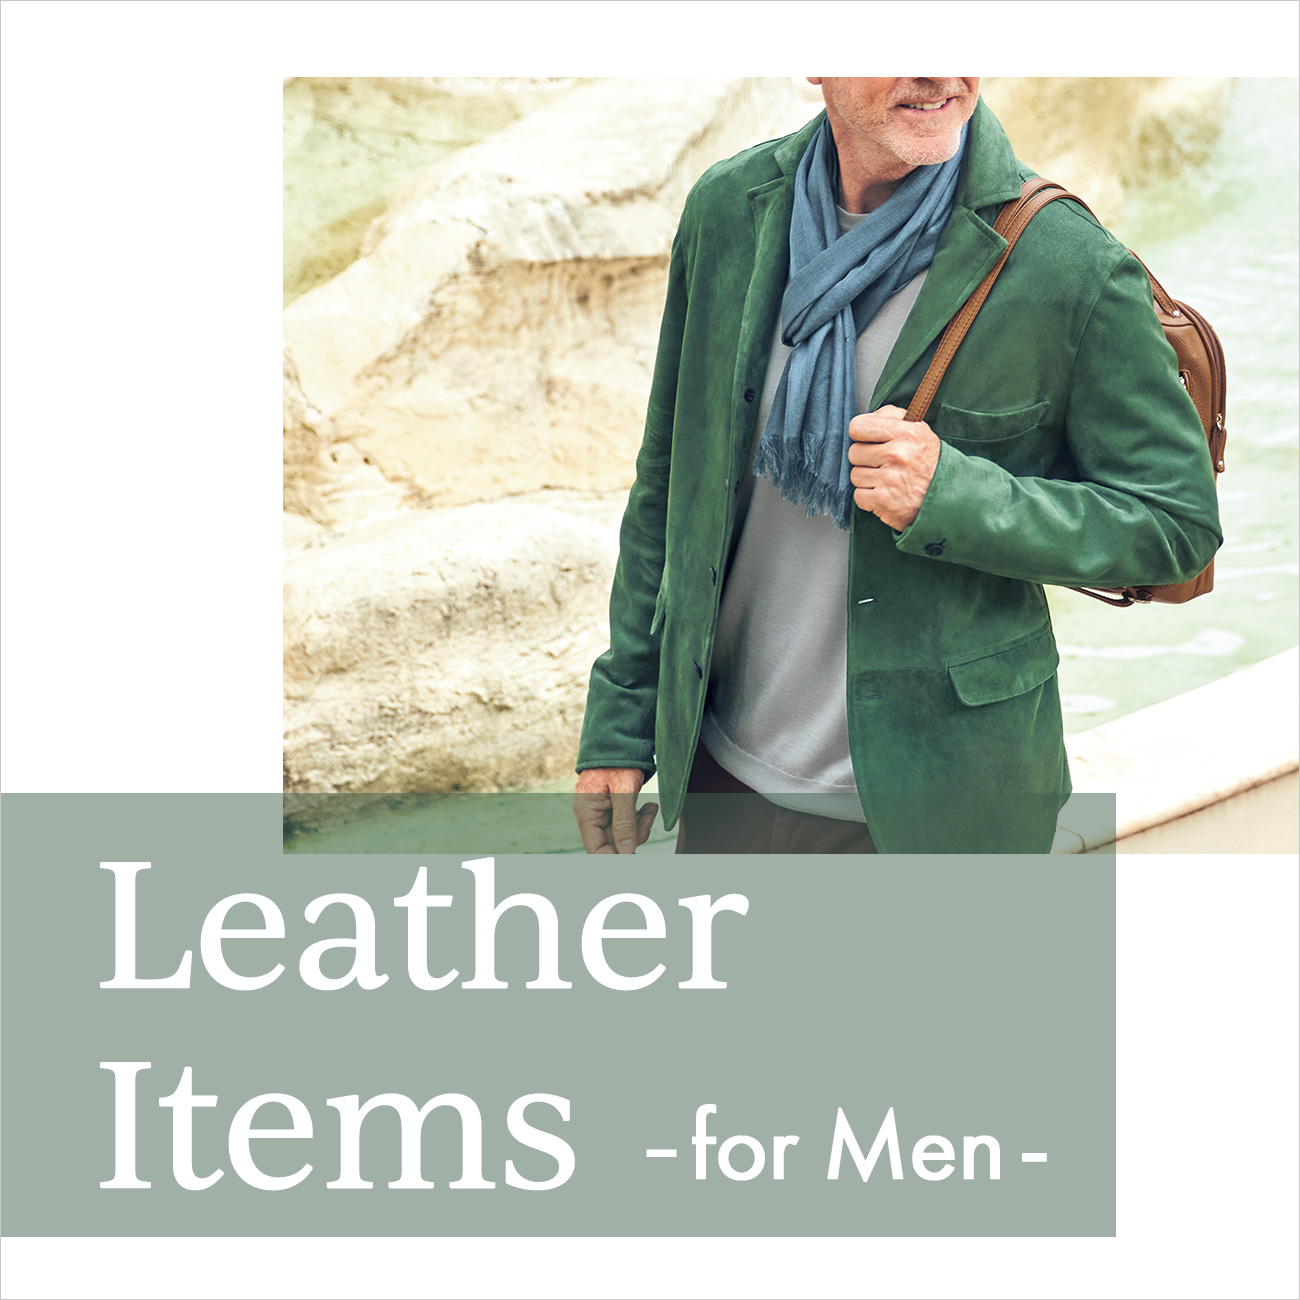 【特集】Leather Items for MEN